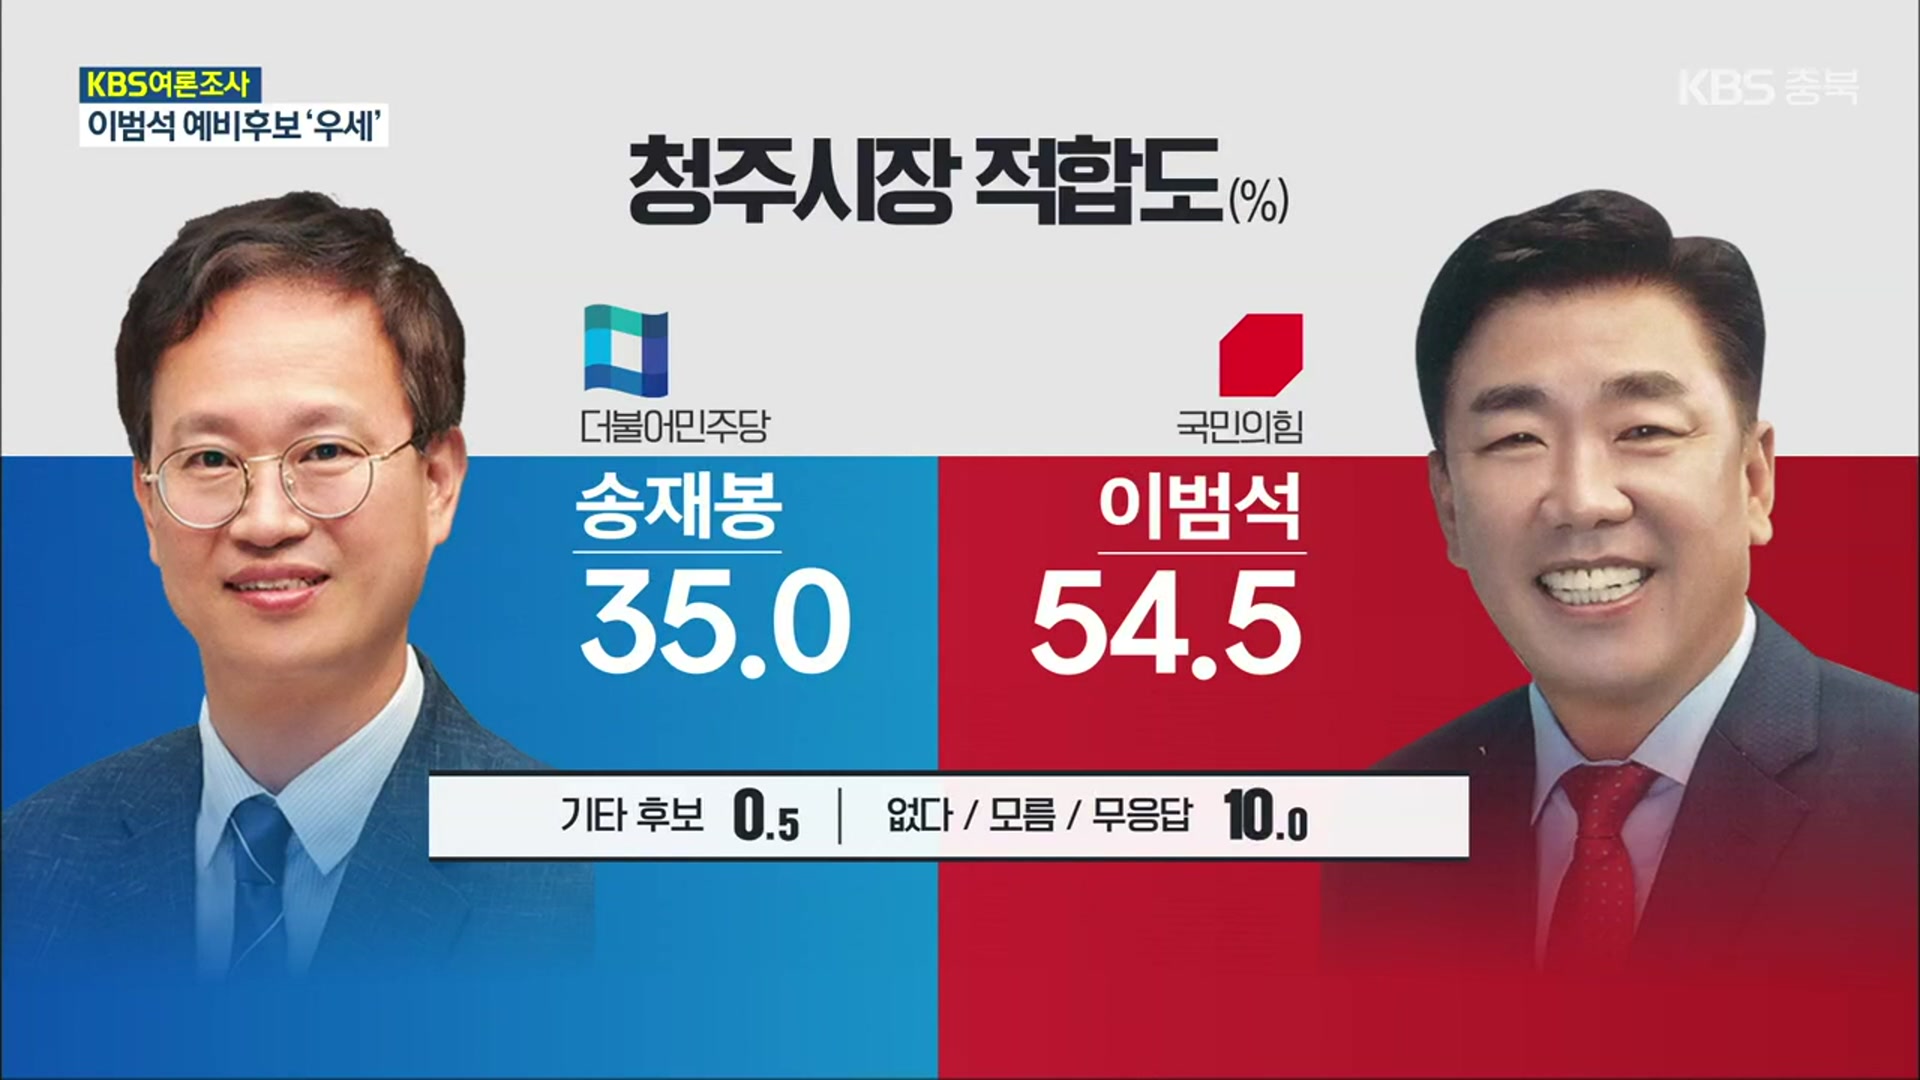 [충북 여론조사] 정치 신인 맞대결 송재봉 35.0% vs 이범석 54.5%